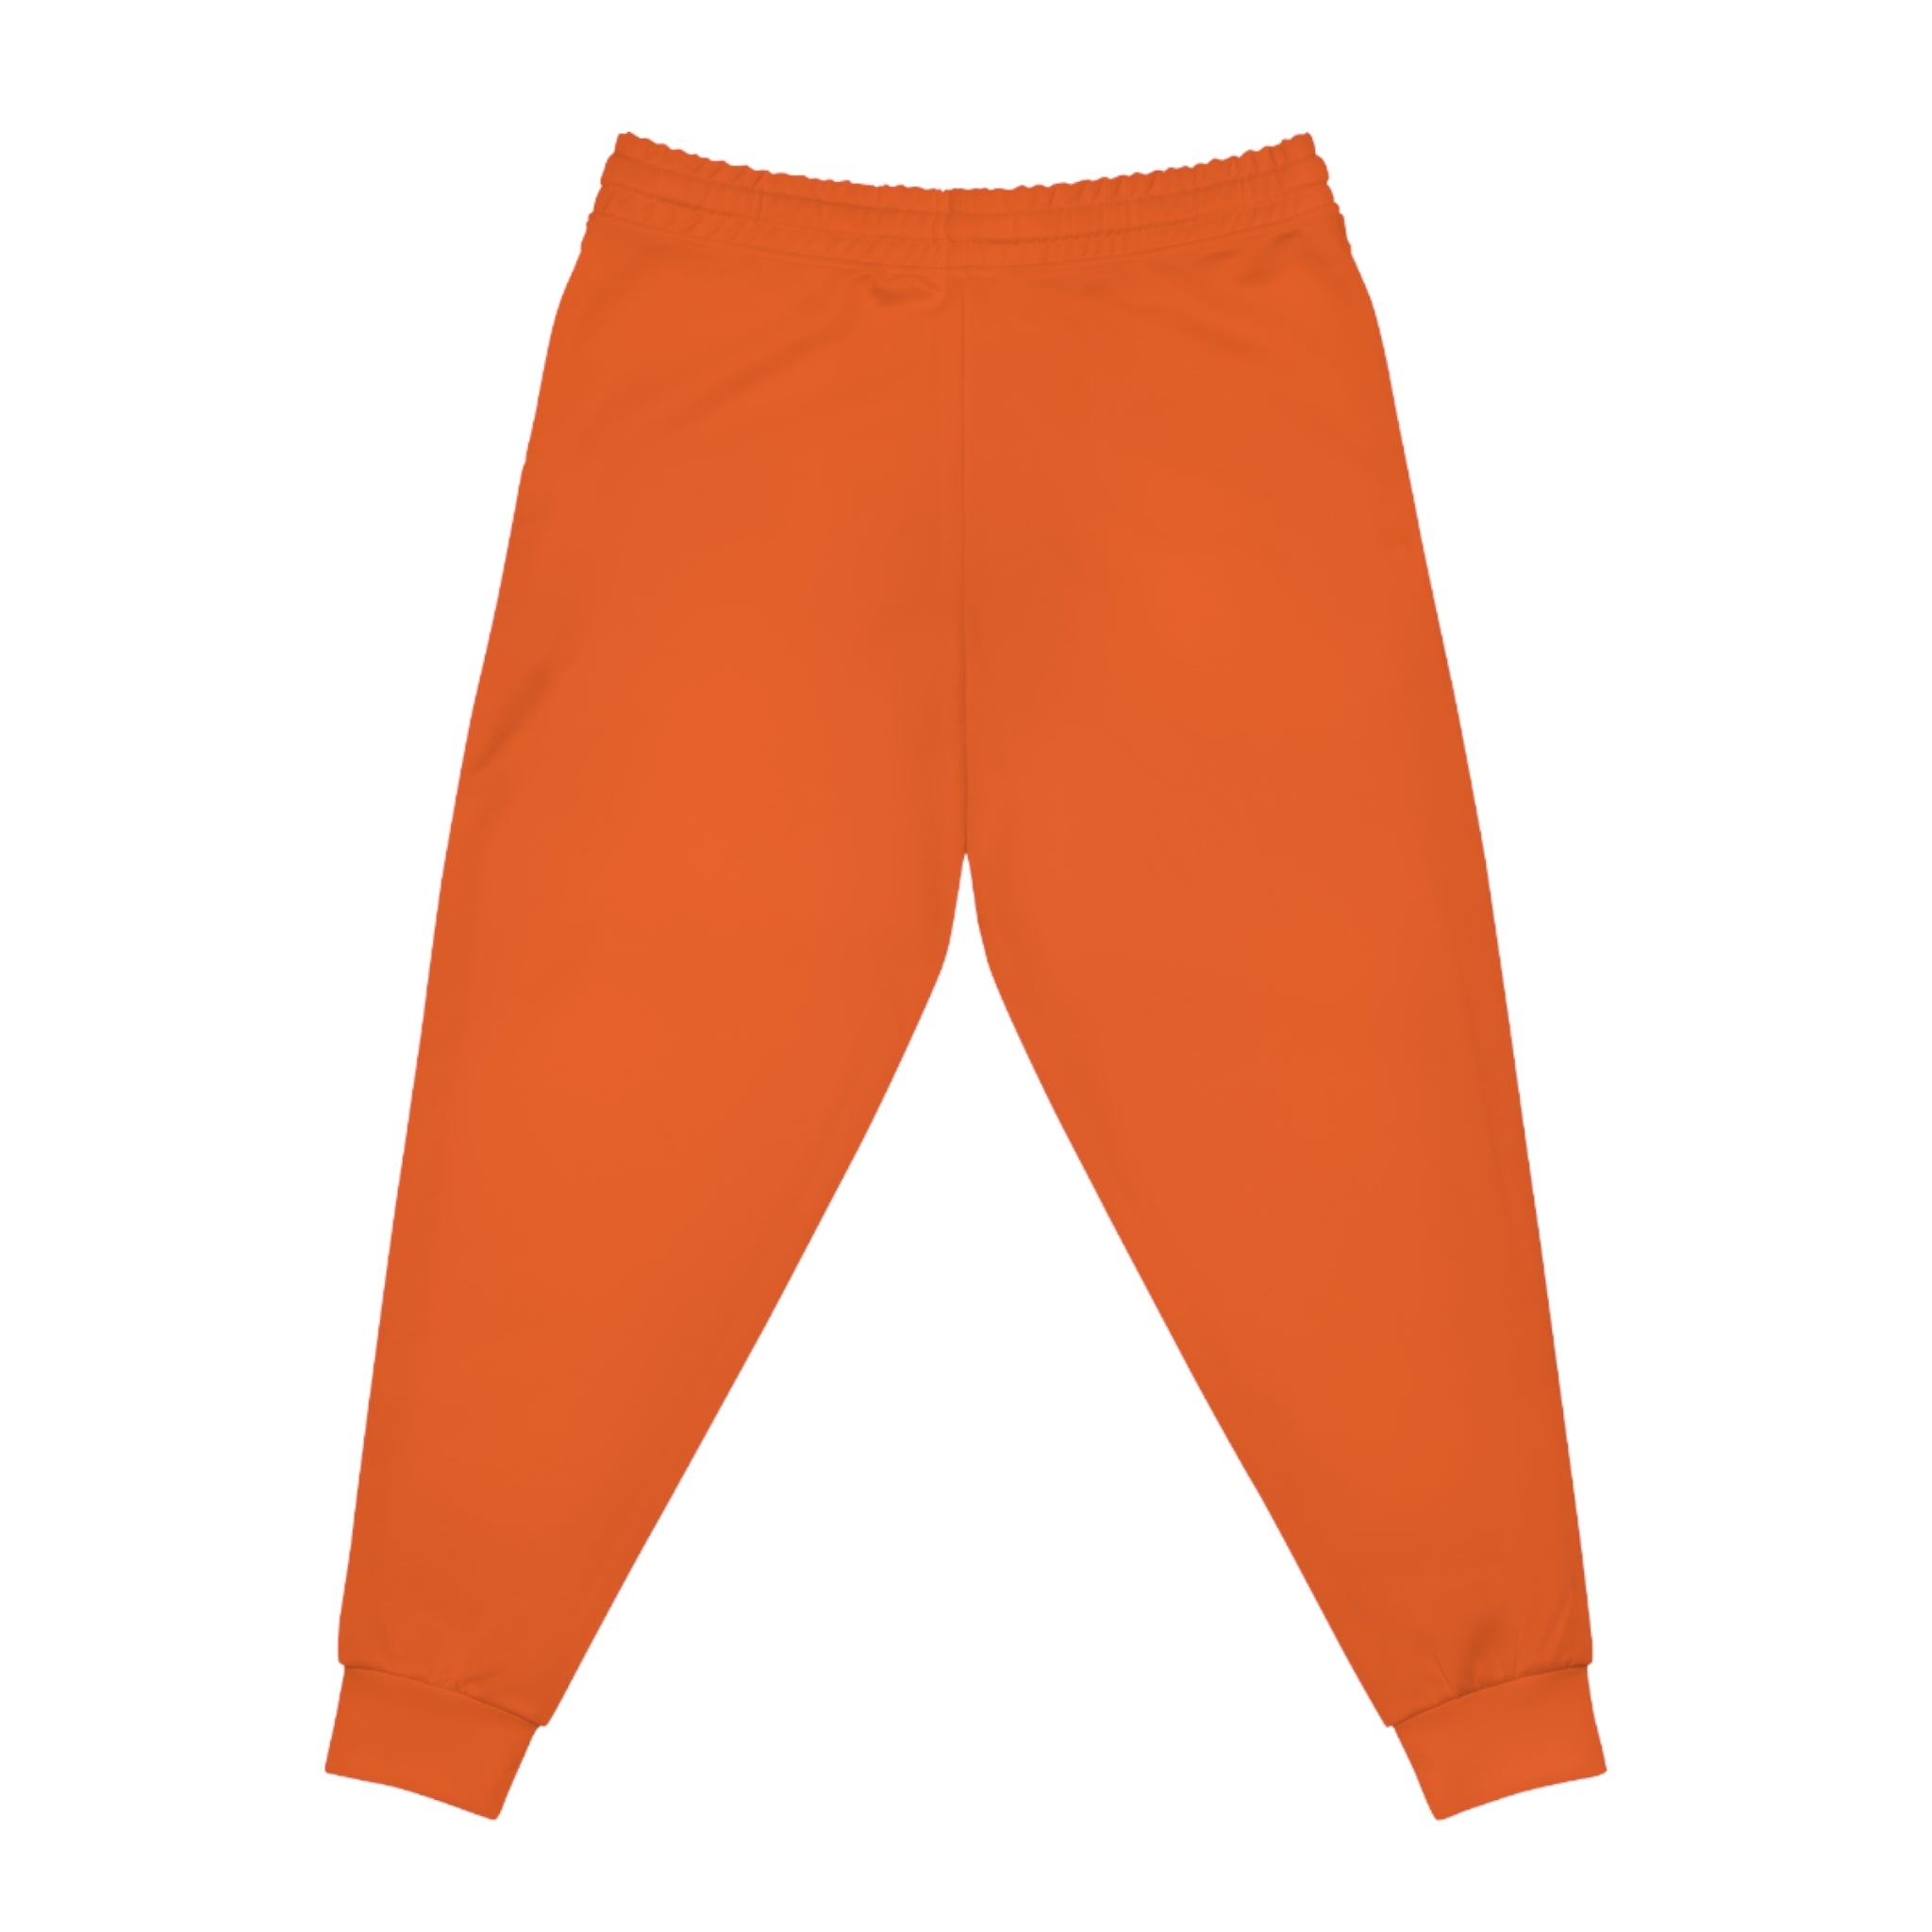 CombinedMinds Athletic Joggers Orange/White Logo